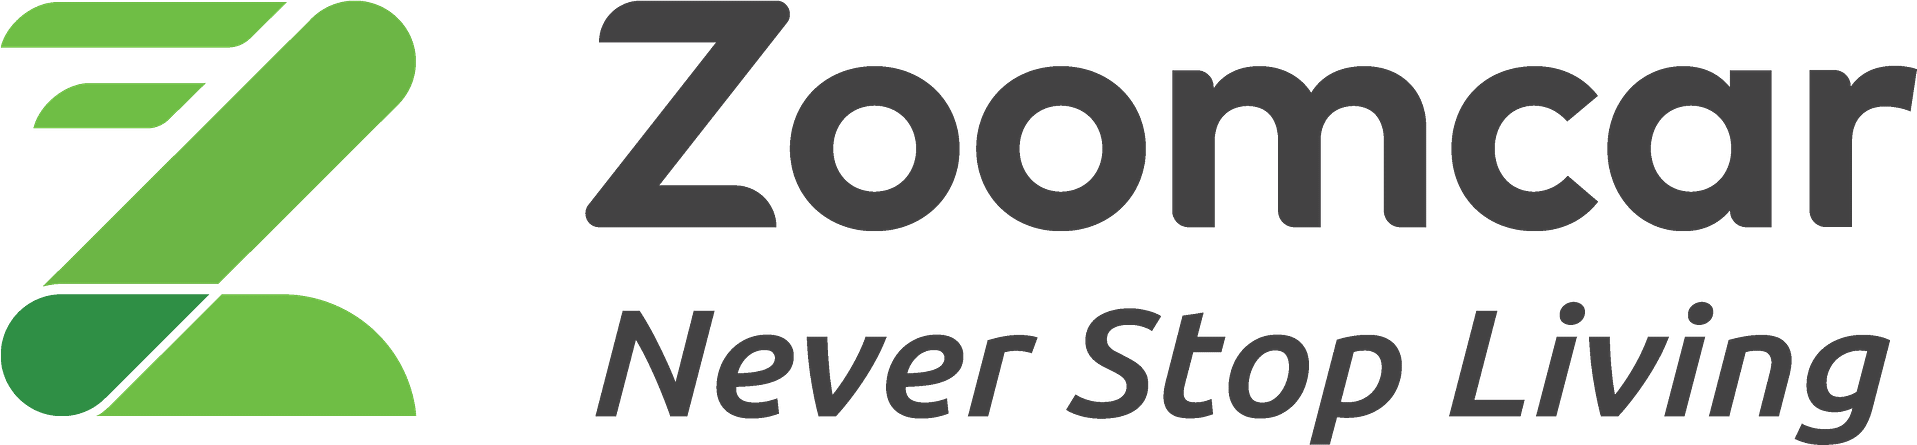 Zoom Car Logo